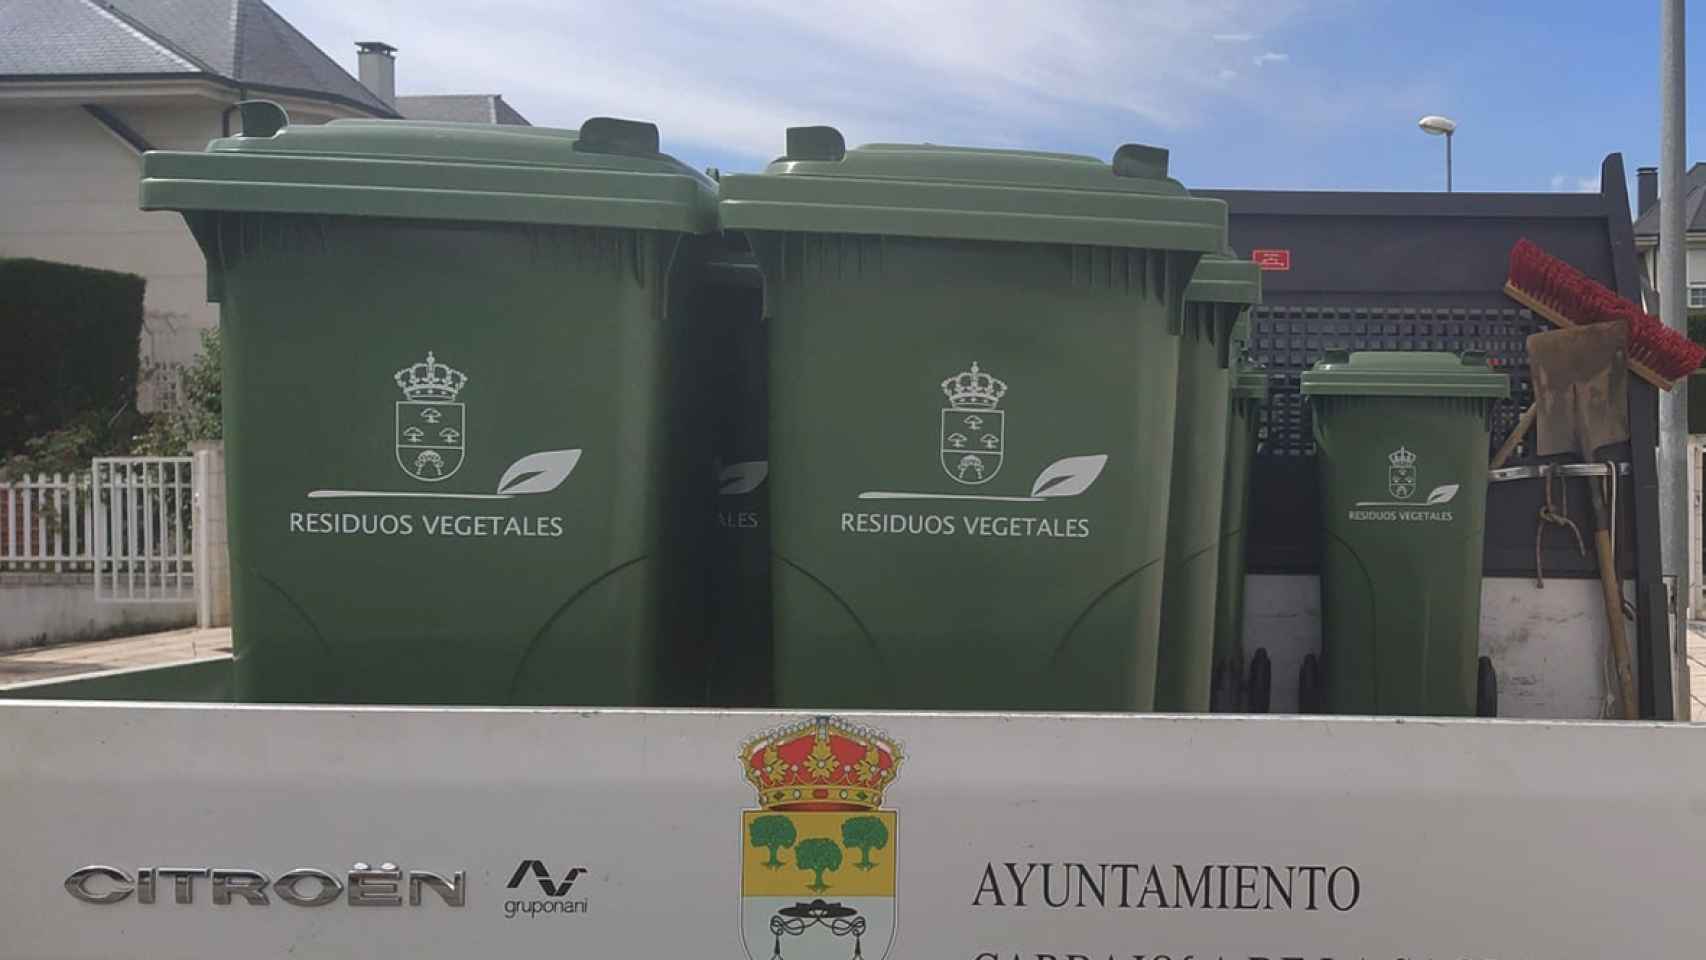 Imagen de los contenedores para residuos vegetales instalados en Carbajosa de la Sagrada